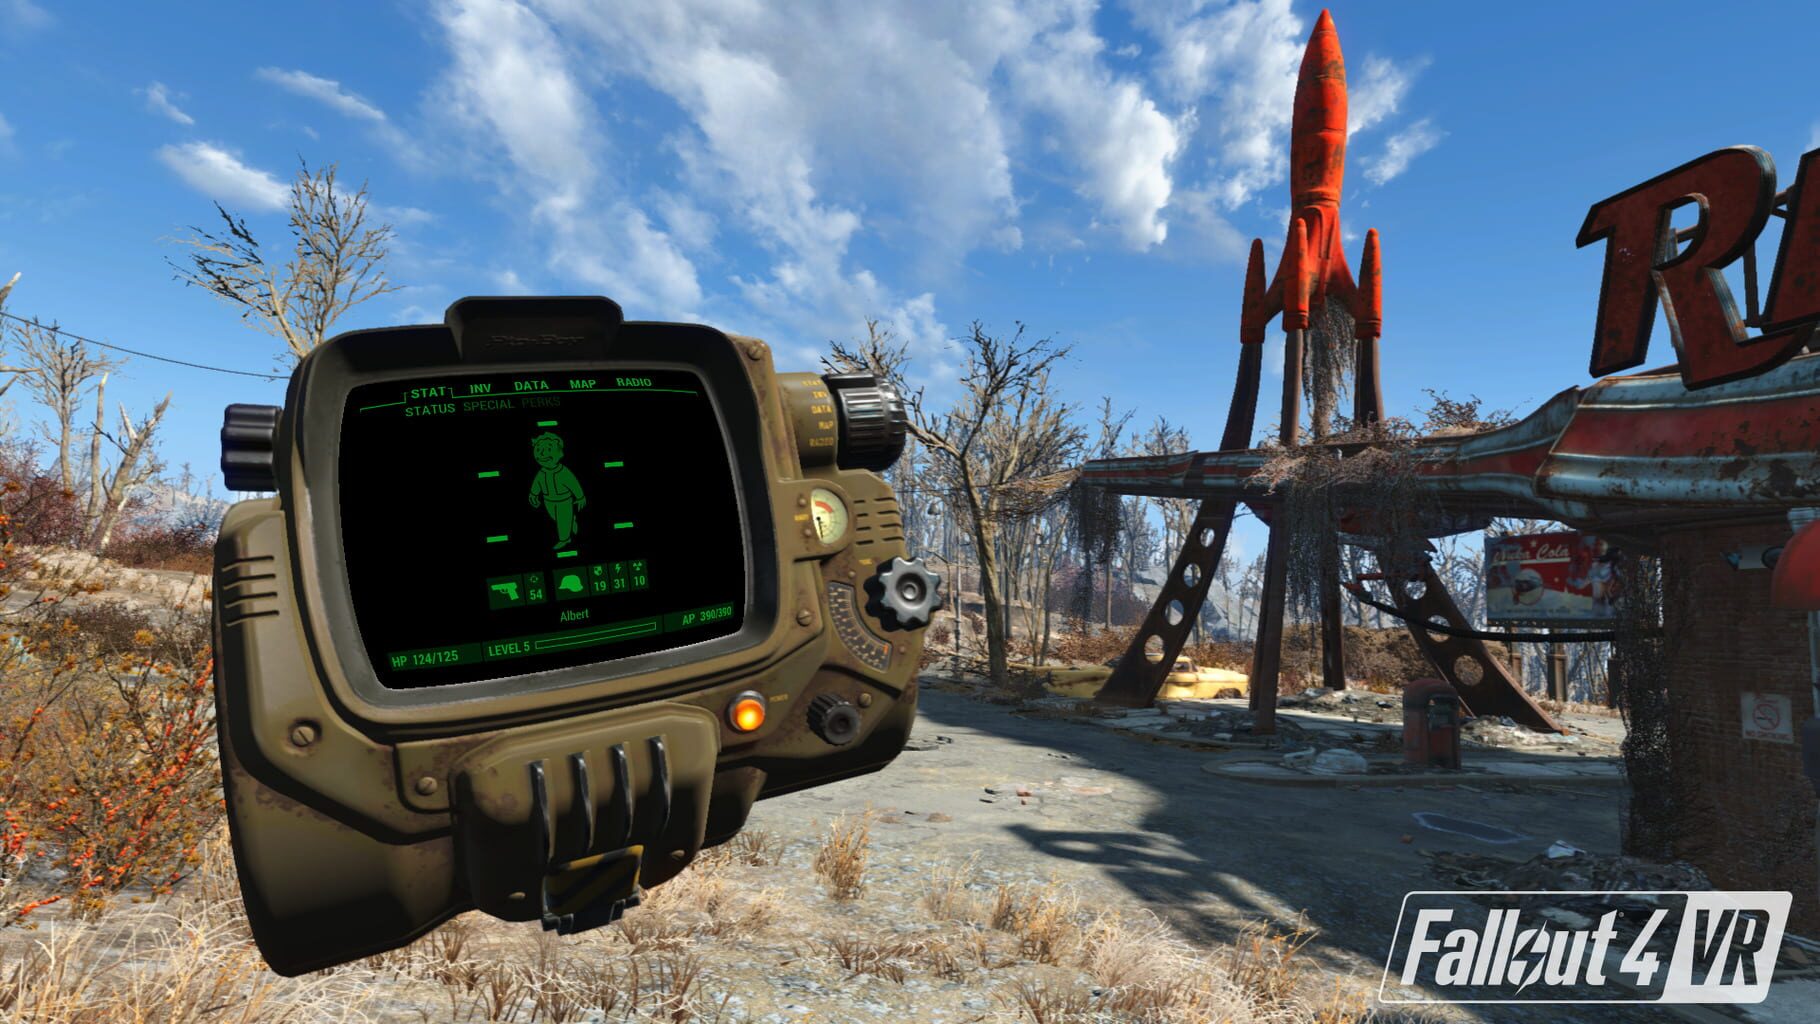 Captura de pantalla - Fallout 4 VR